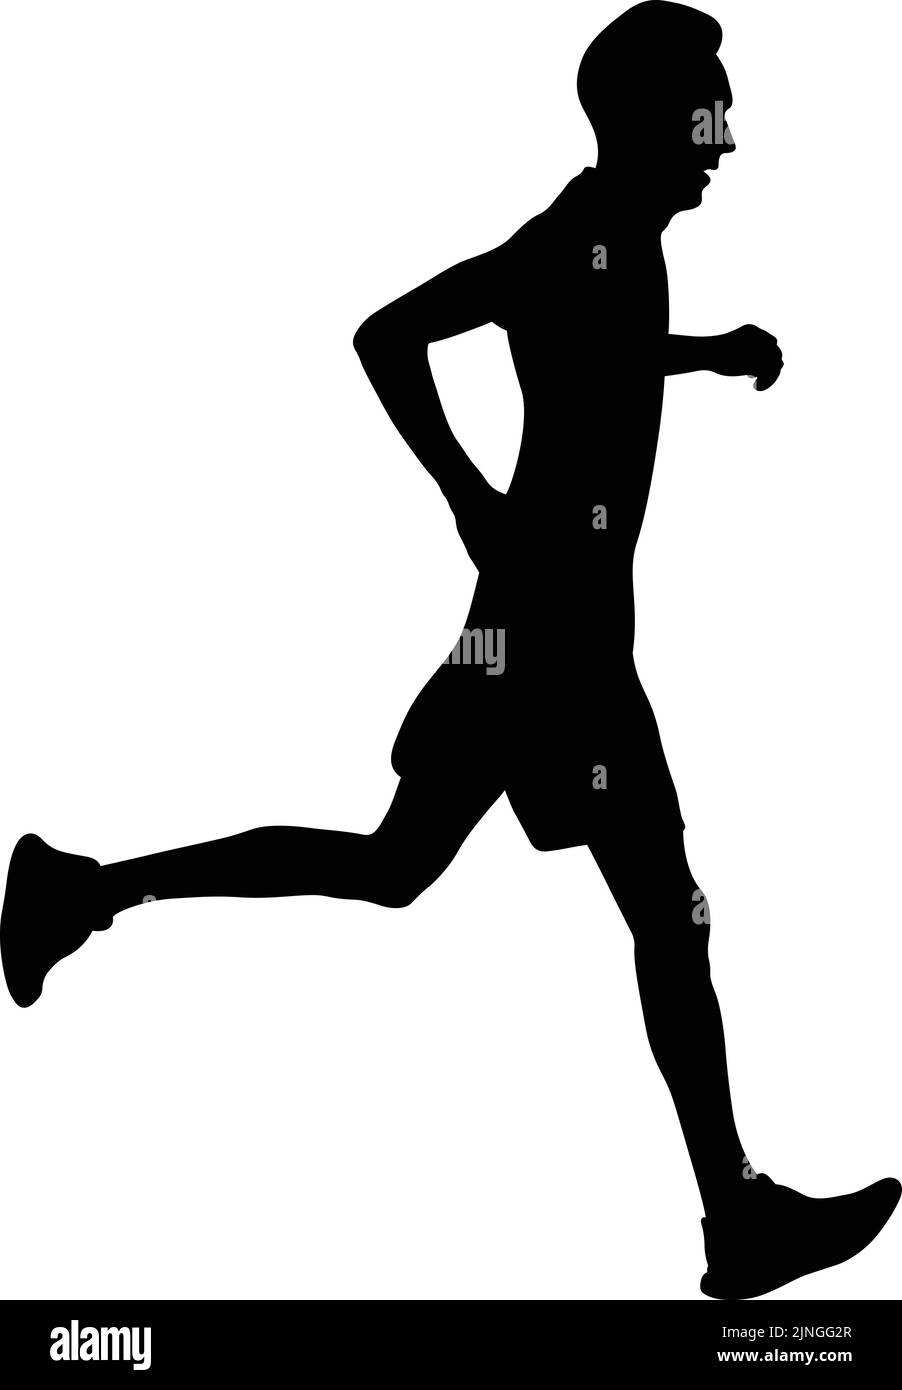 runner athlete run mountain trail black silhouette Stock Vector